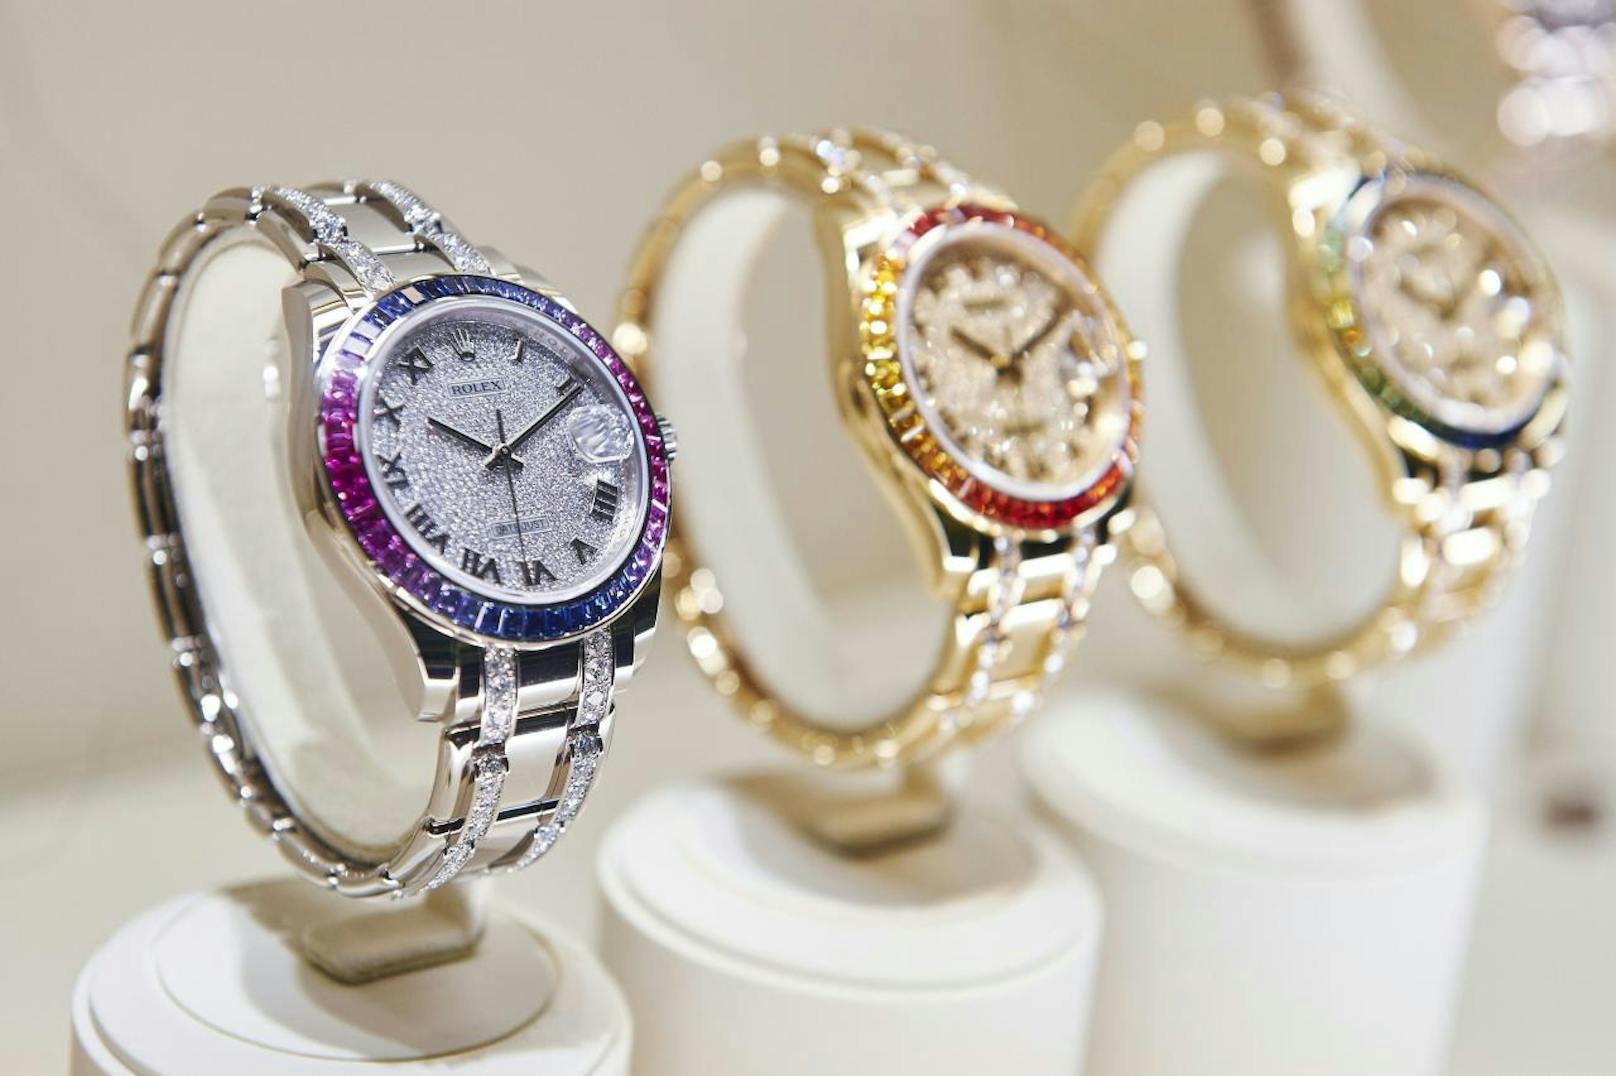 Ein Unternehmer aus Salzburg lieferte Rolex-Uhren und andere Objekte an einen Geschäftspartner in England.